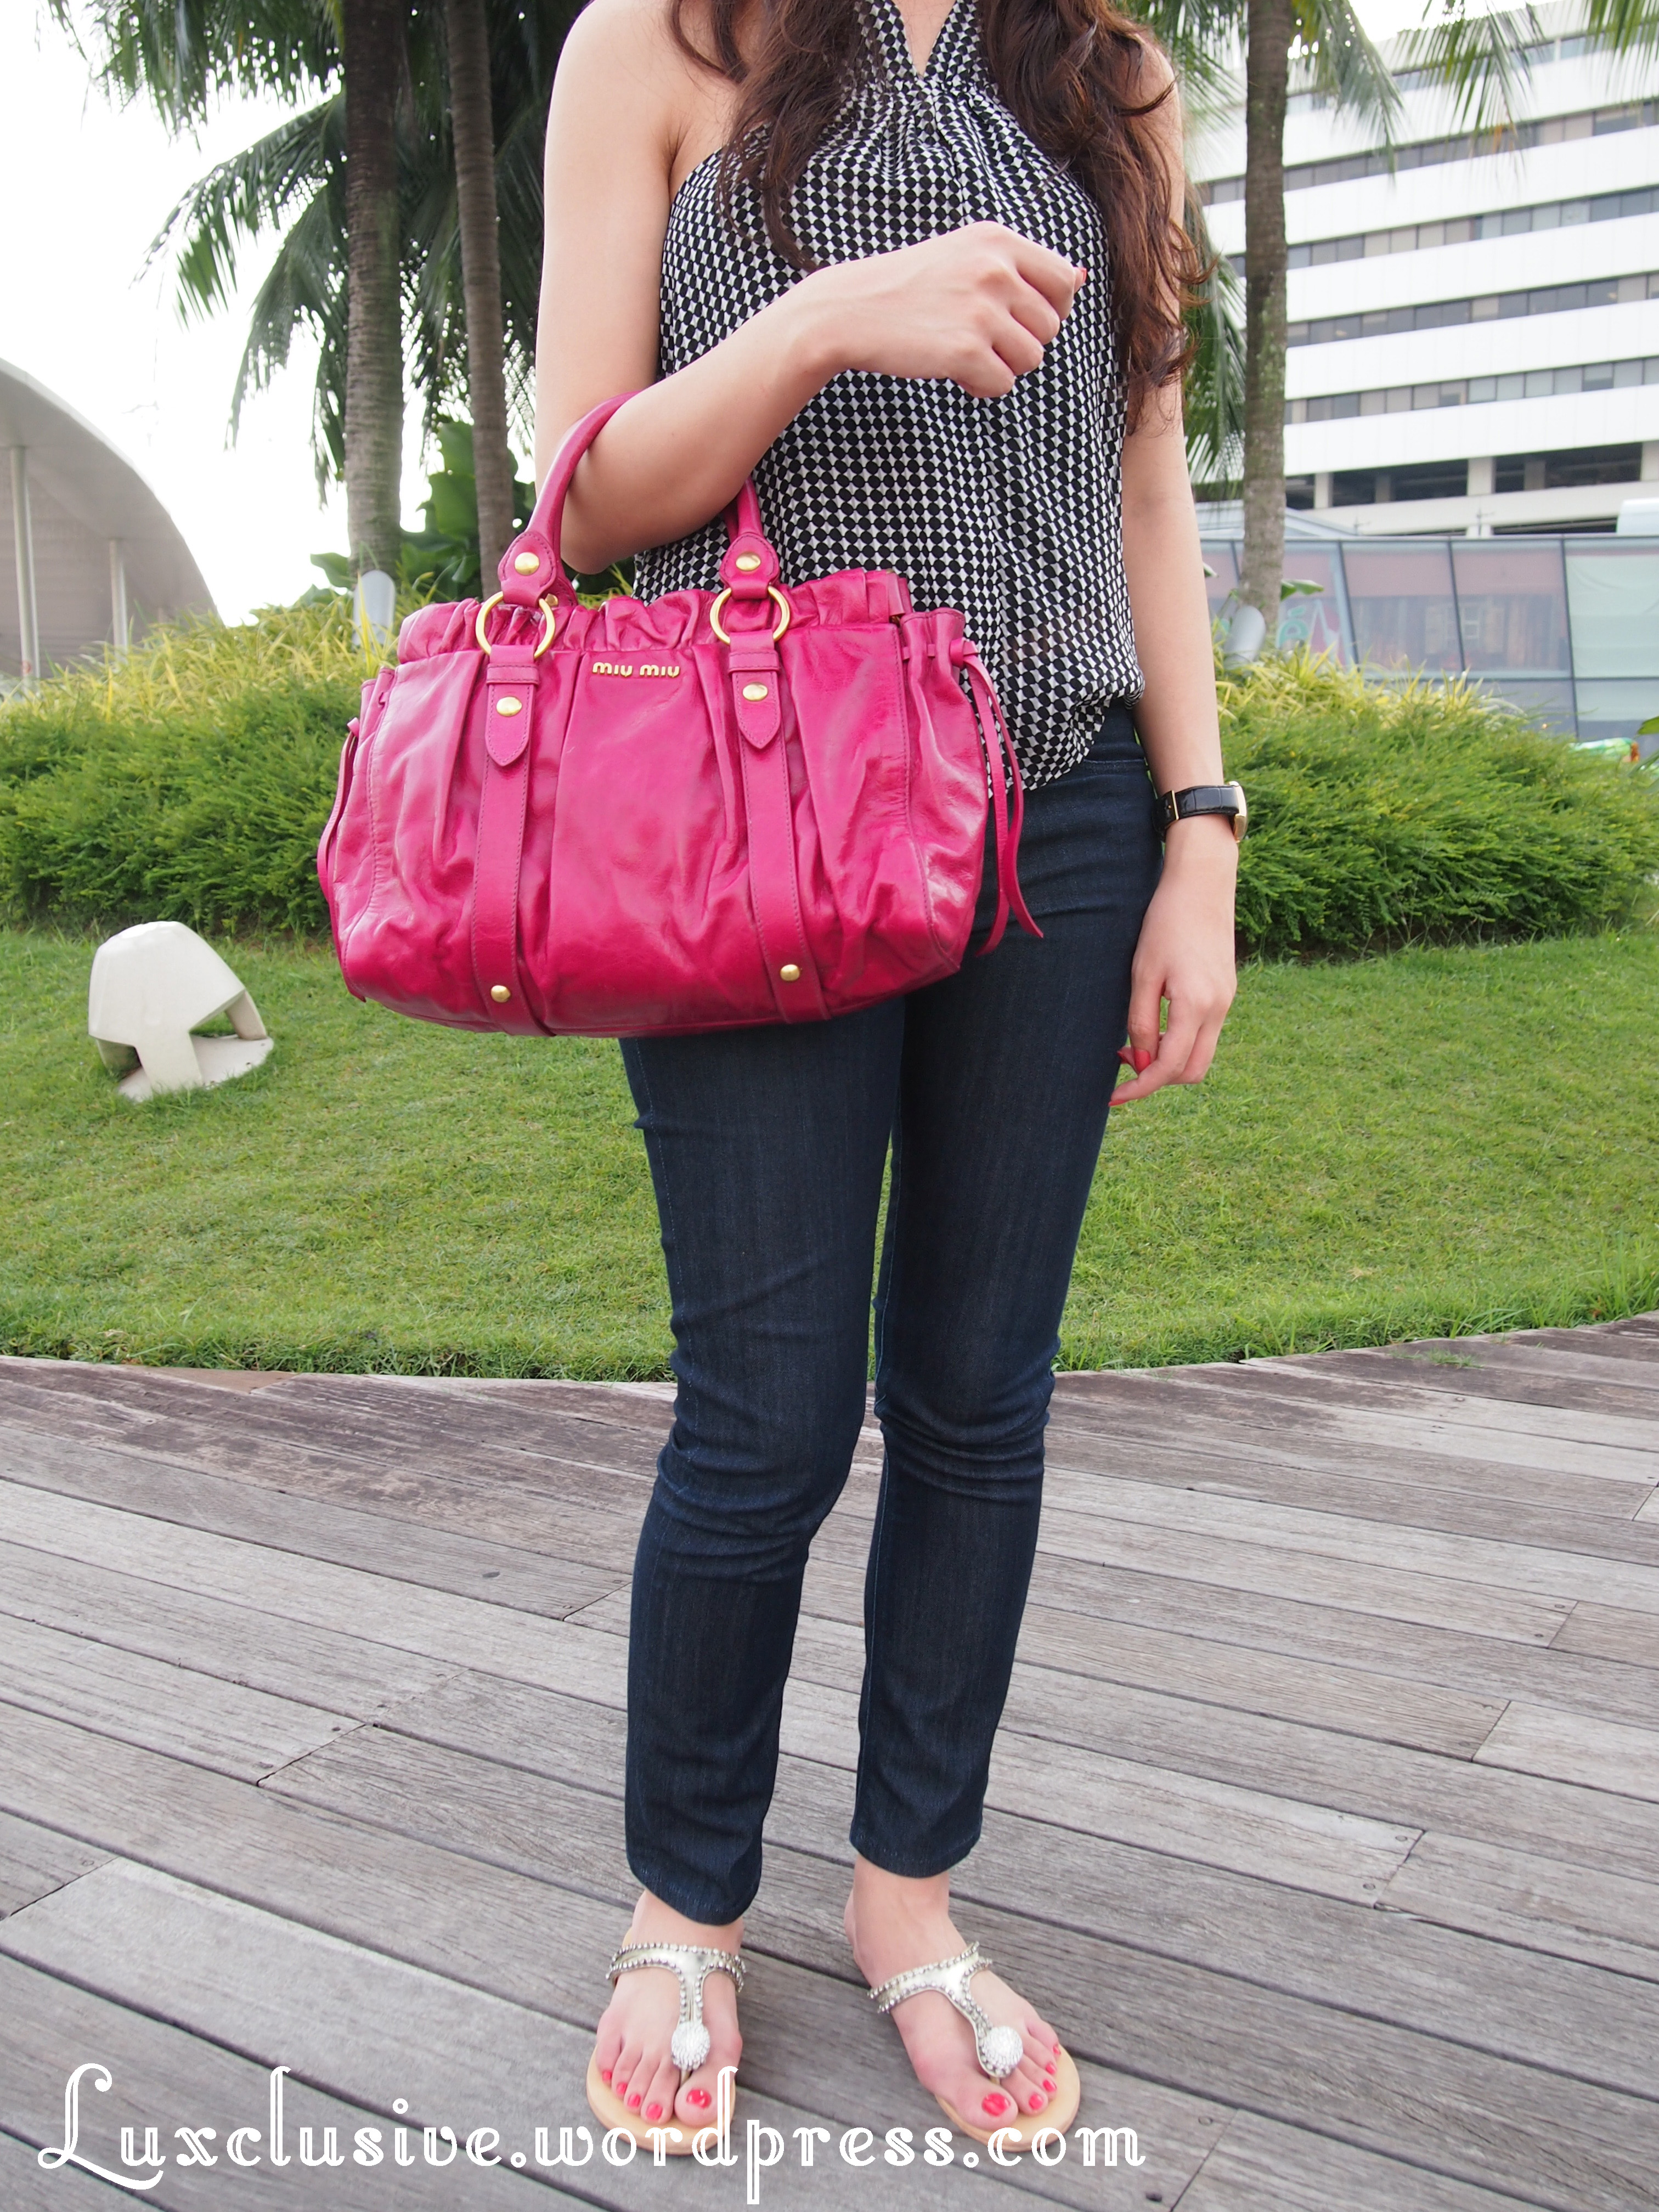 Miu Miu Pink Leather Bow Top Handle Bag Miu Miu